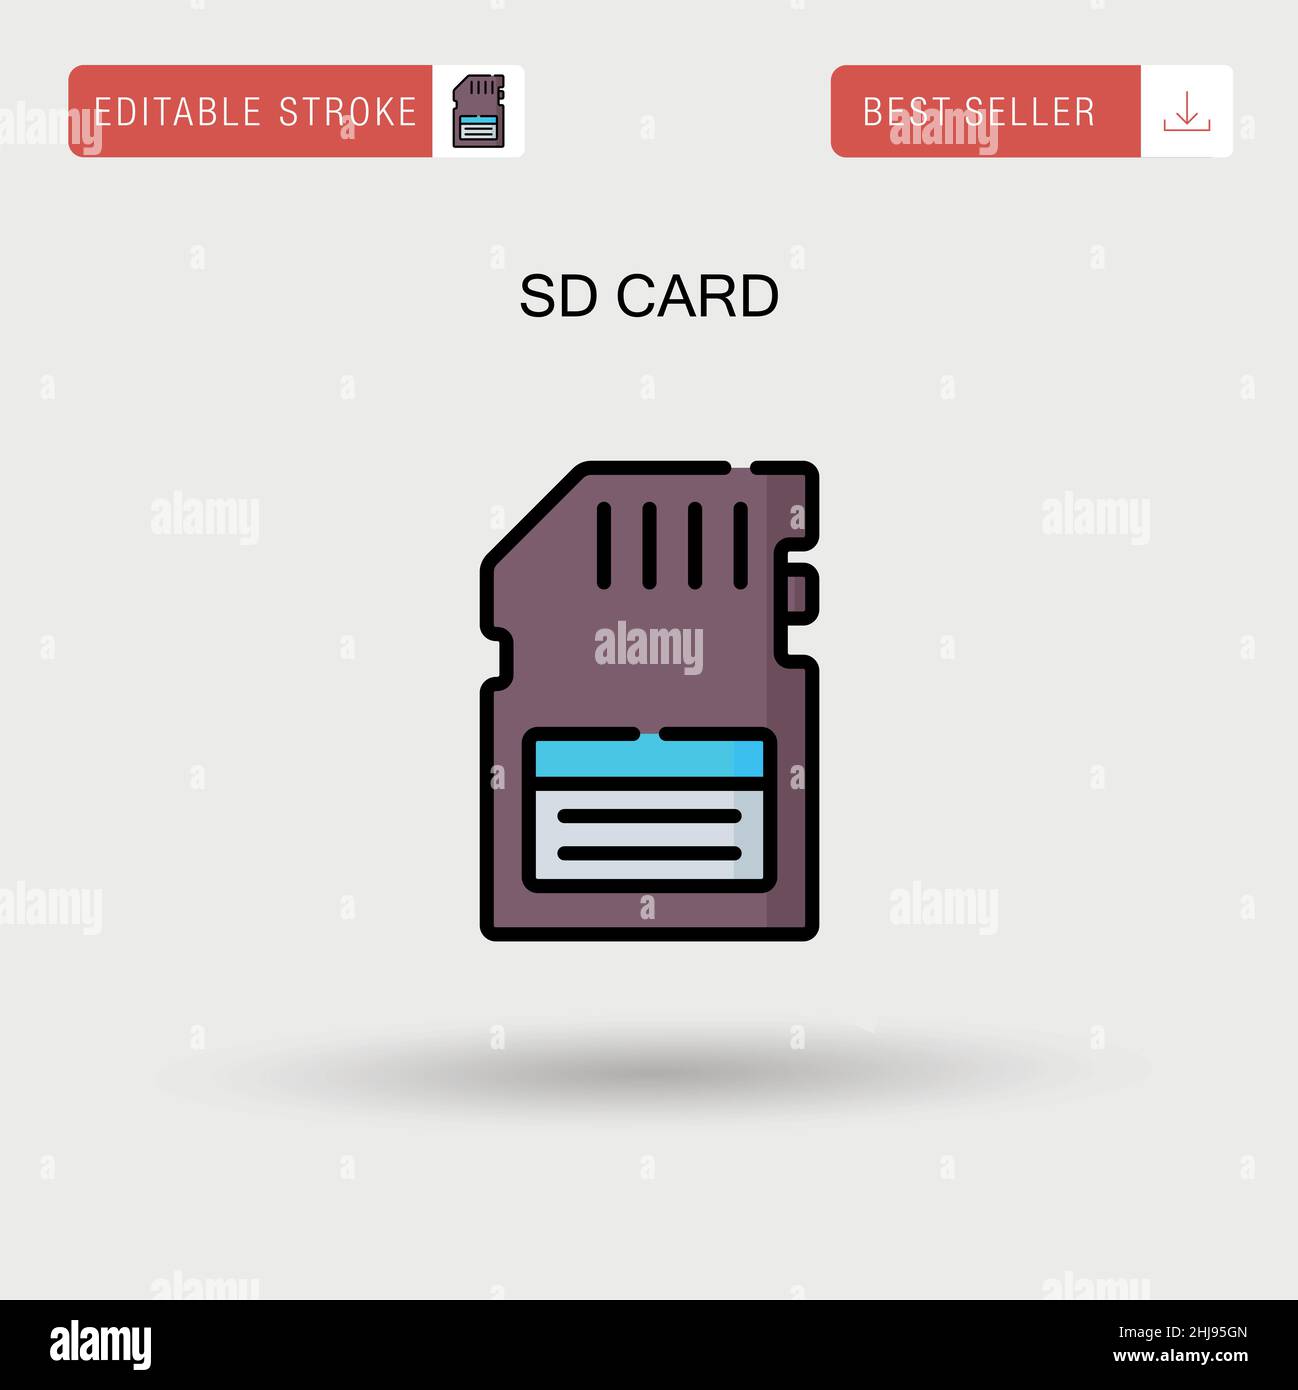 Sd card Simple vector icon. Stock Vector